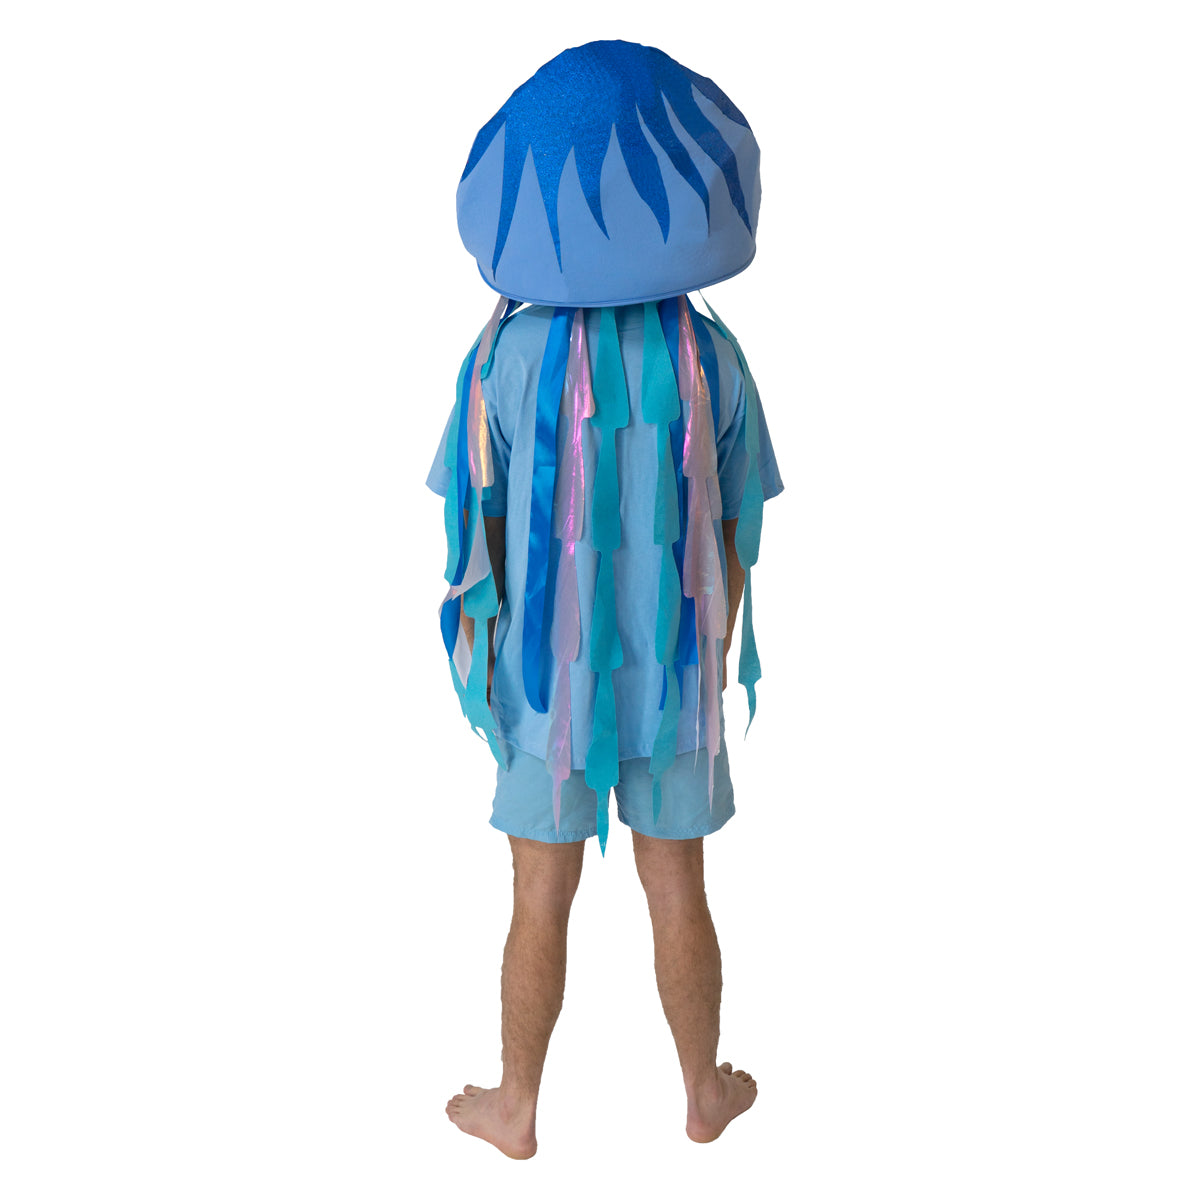 Women's Jellyfish Costume